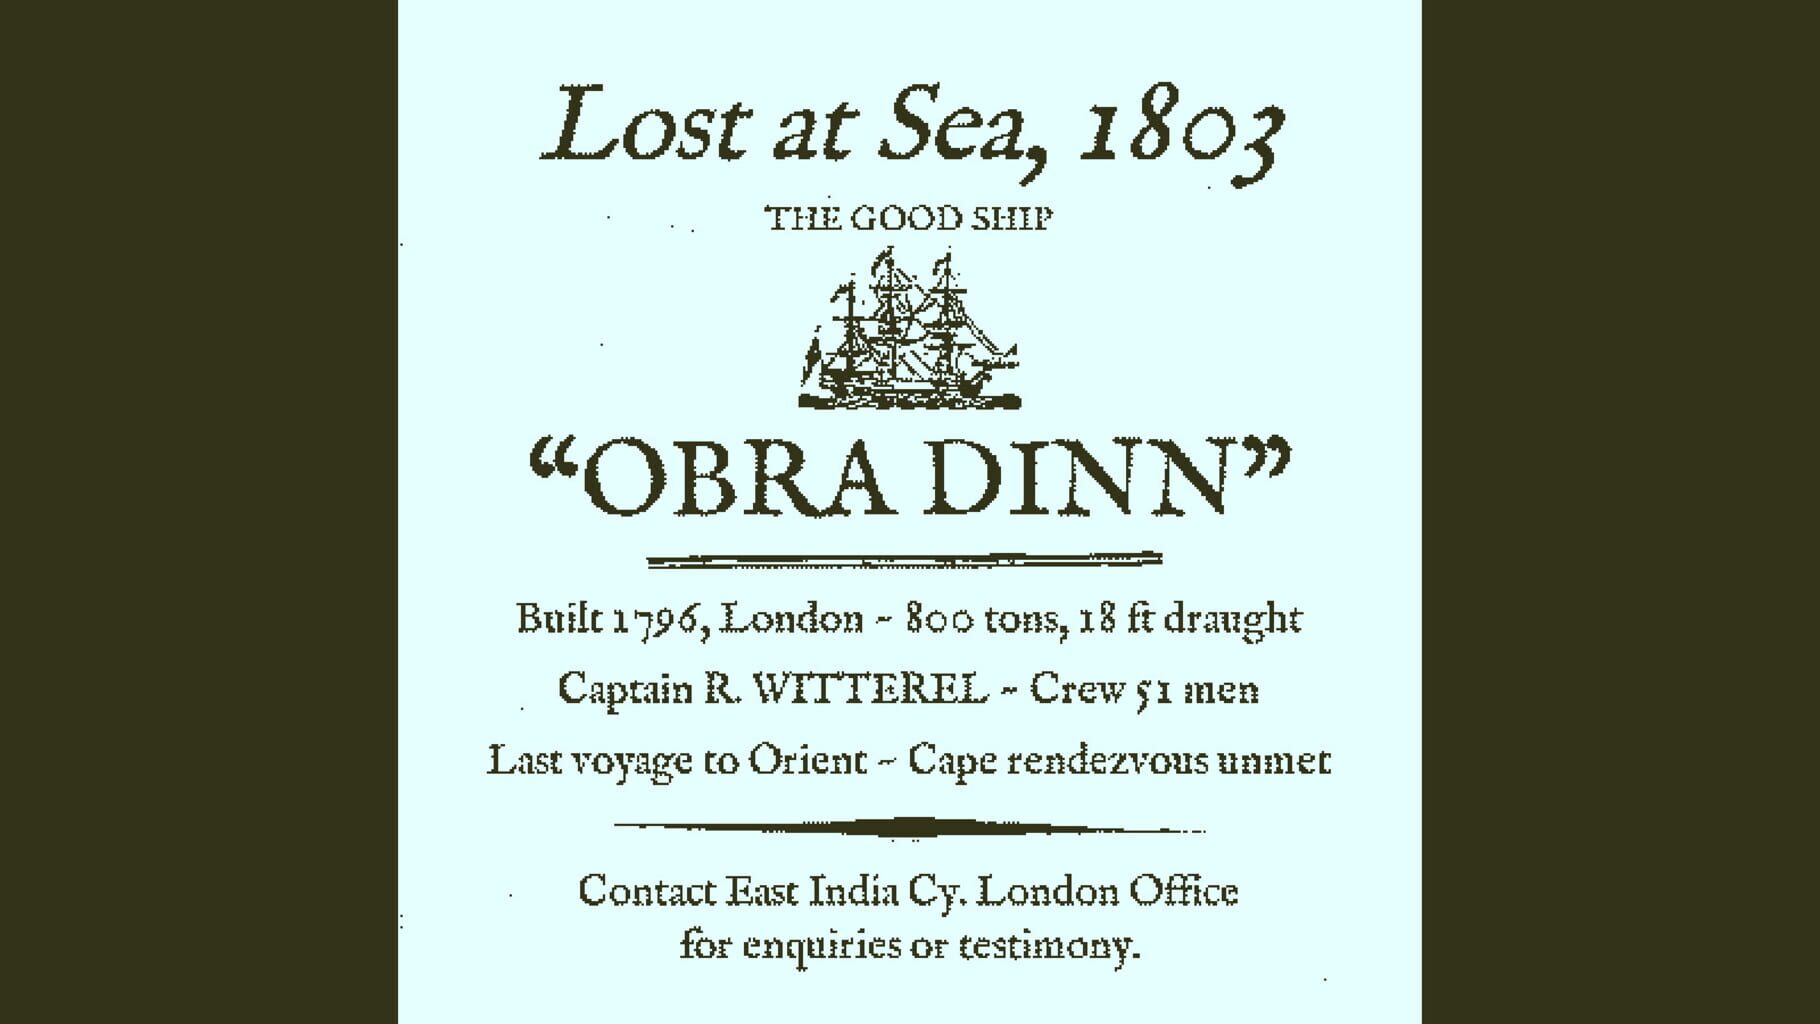 Screenshot for Return of the Obra Dinn